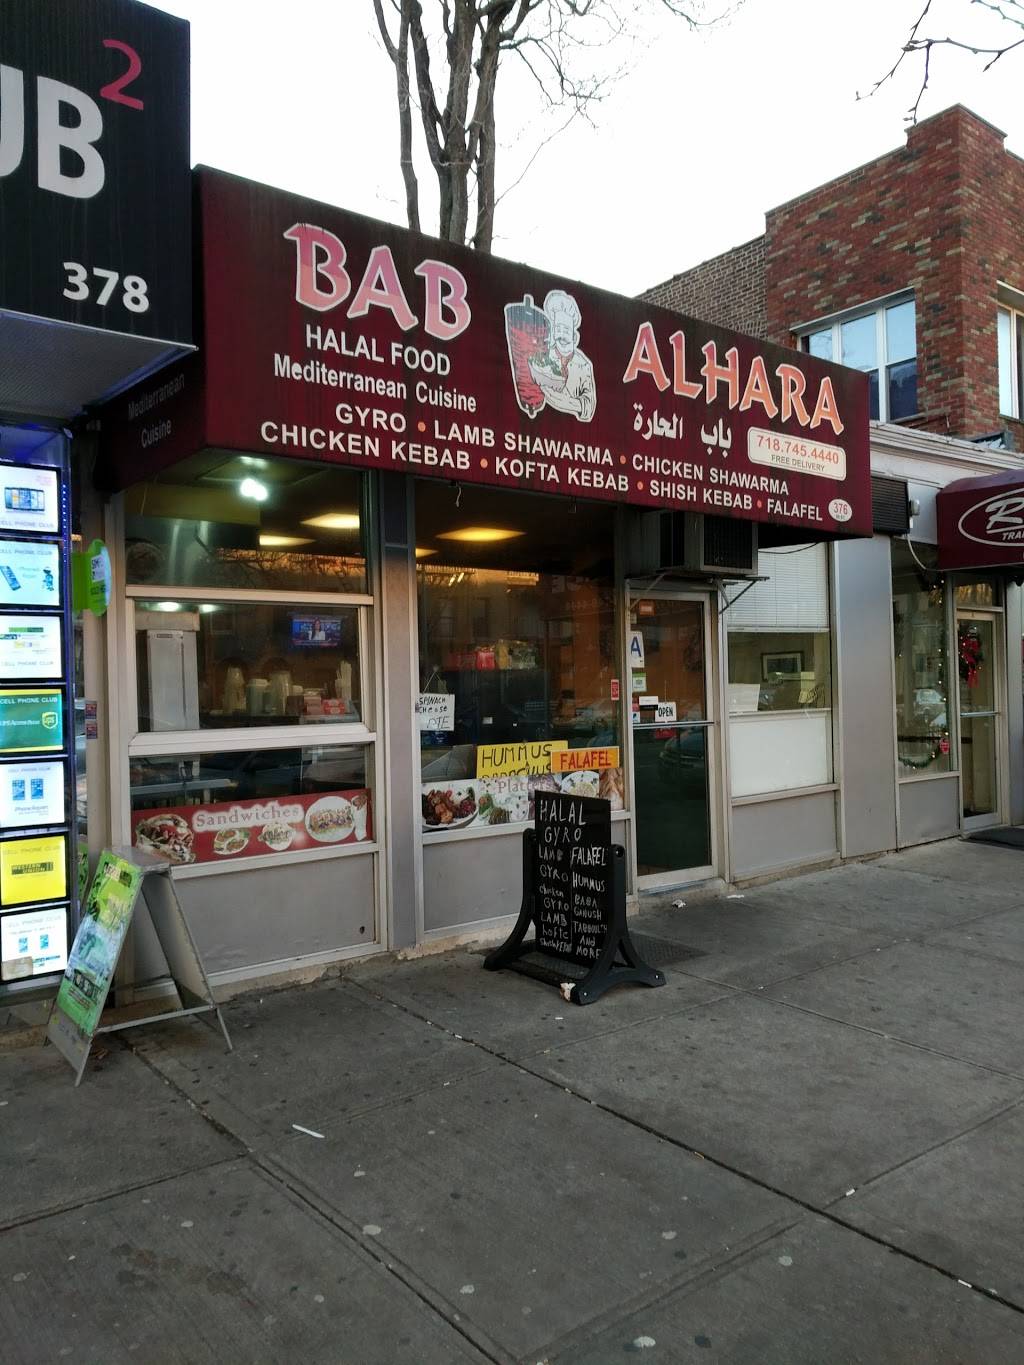 Bab Alhara | restaurant | 376 86th St, Brooklyn, NY 11209, USA | 7187454440 OR +1 718-745-4440